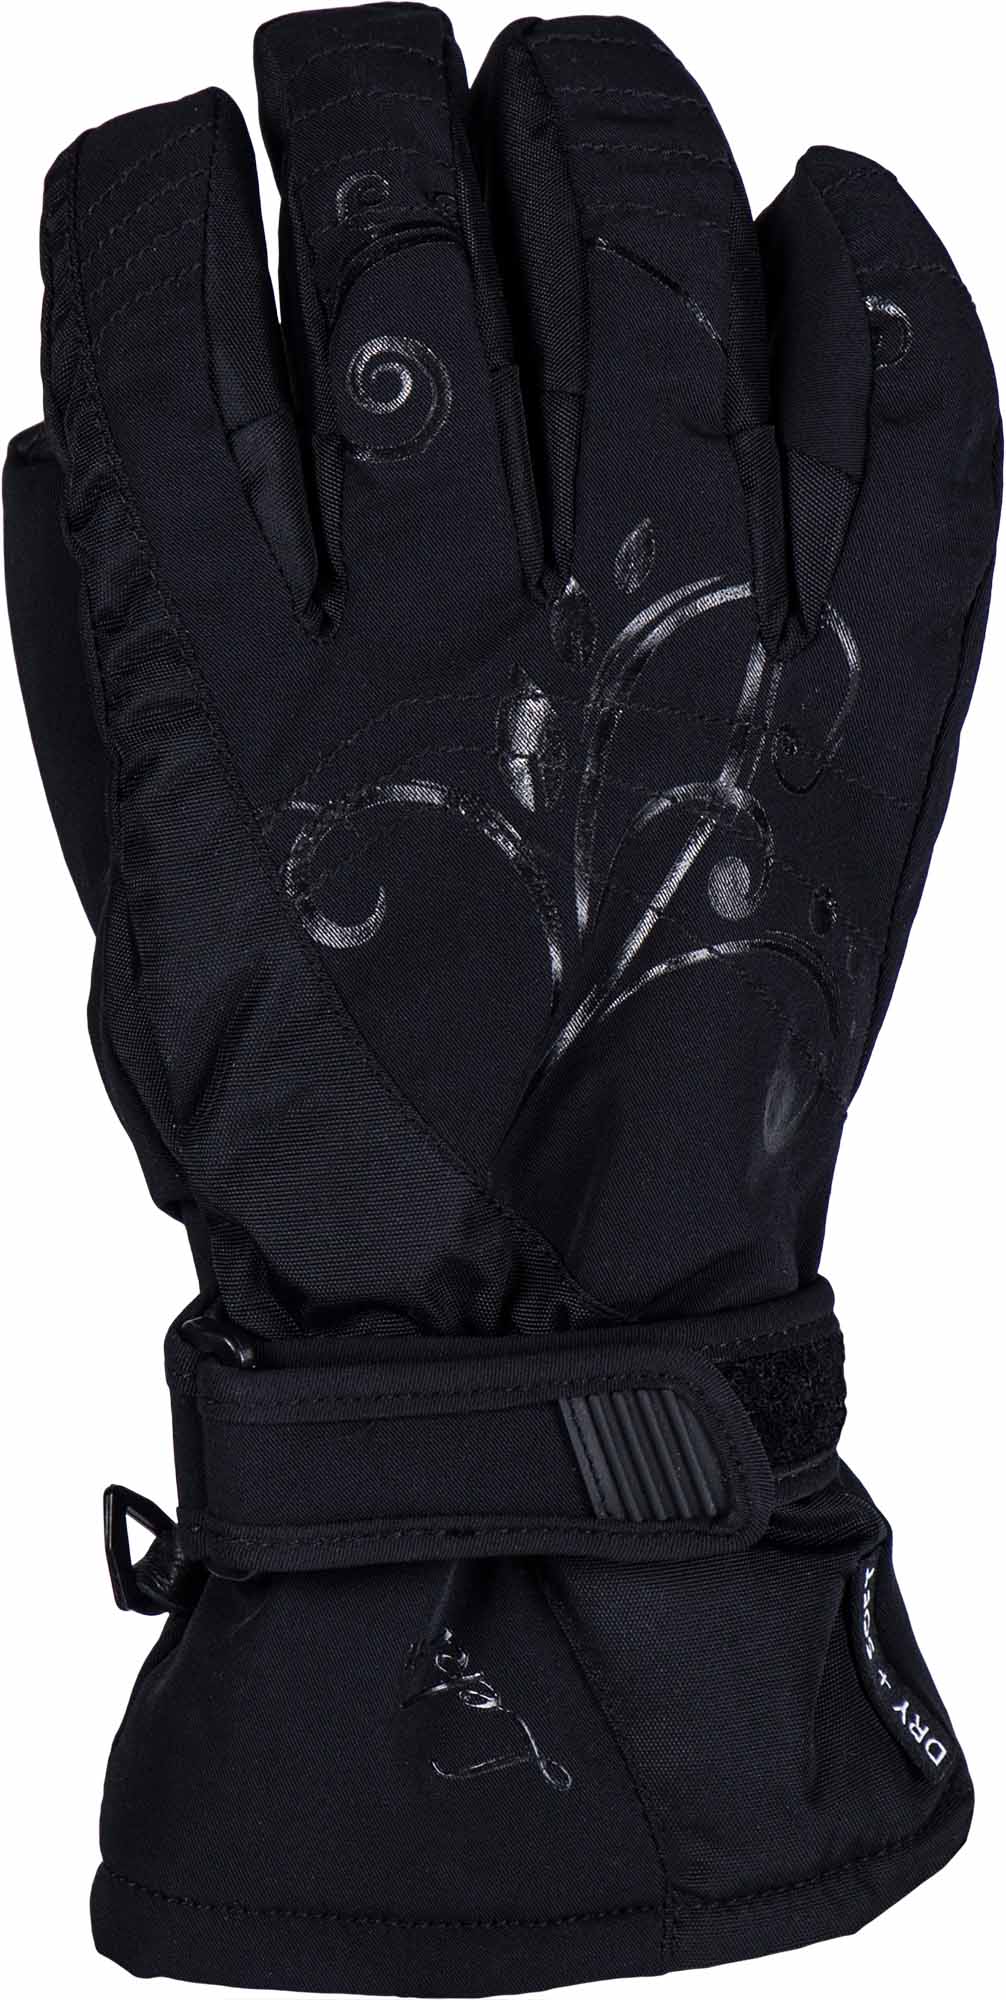 Women’s downhill ski gloves